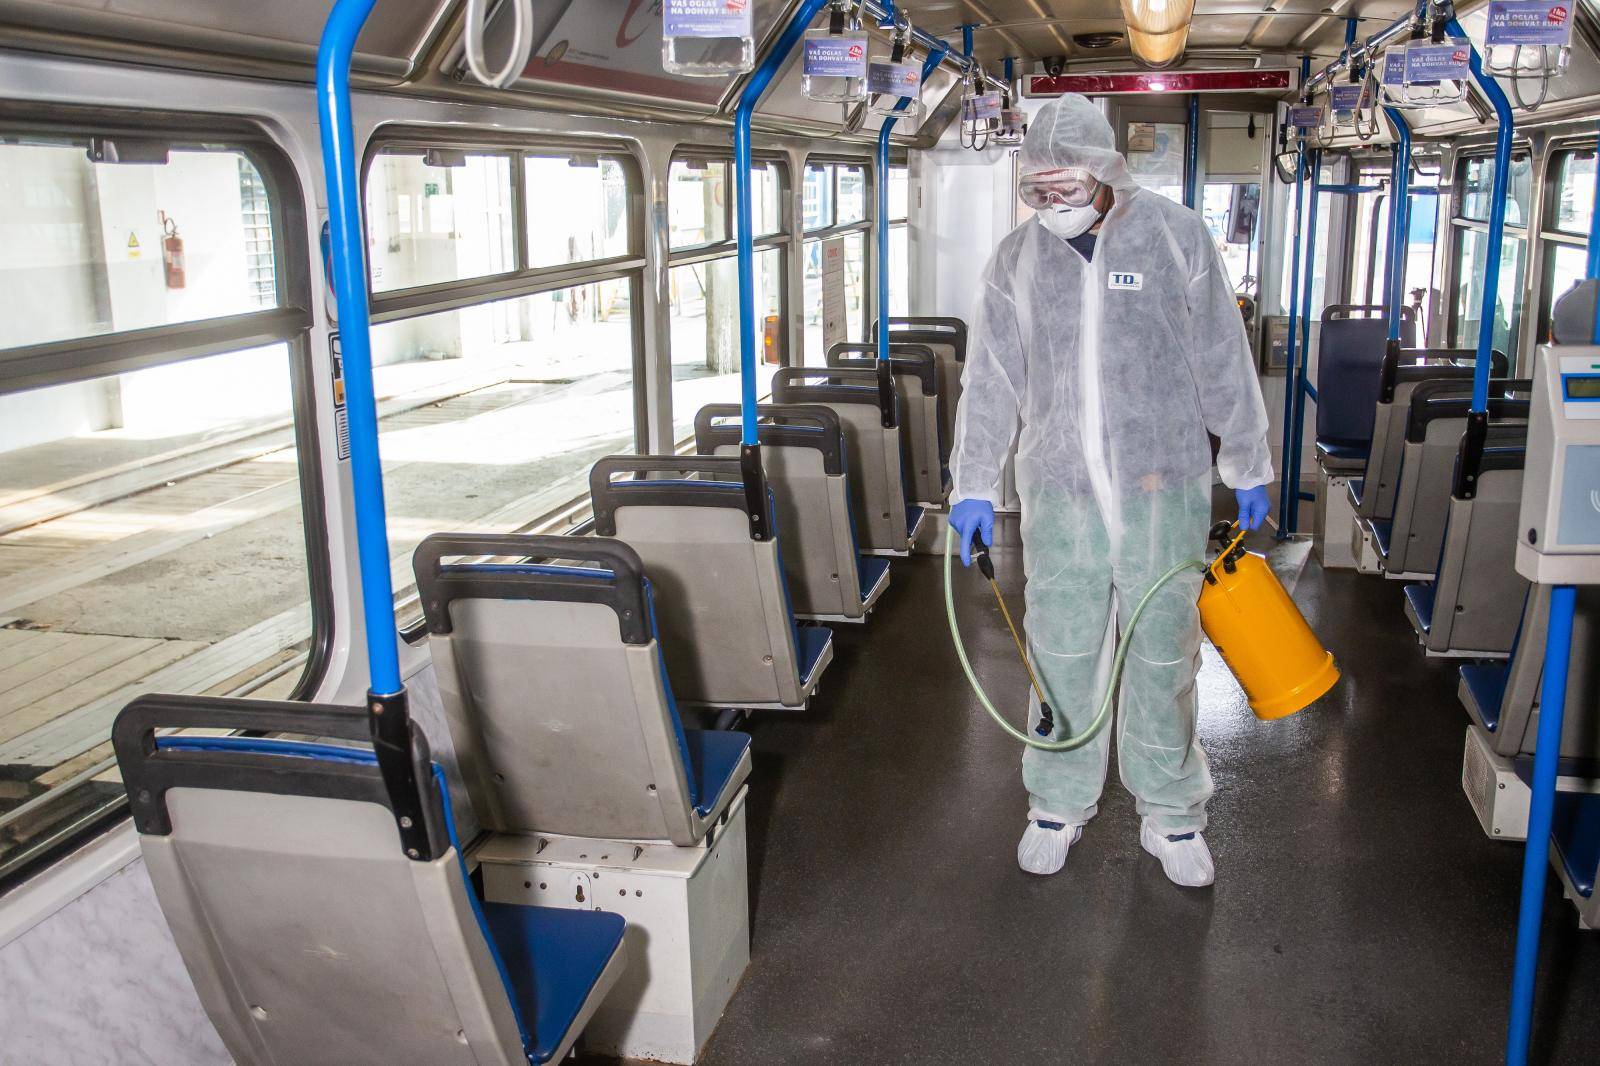 Dezinfekcija javnog prijevoza u Osijeku zbog epidemije koronavirusa